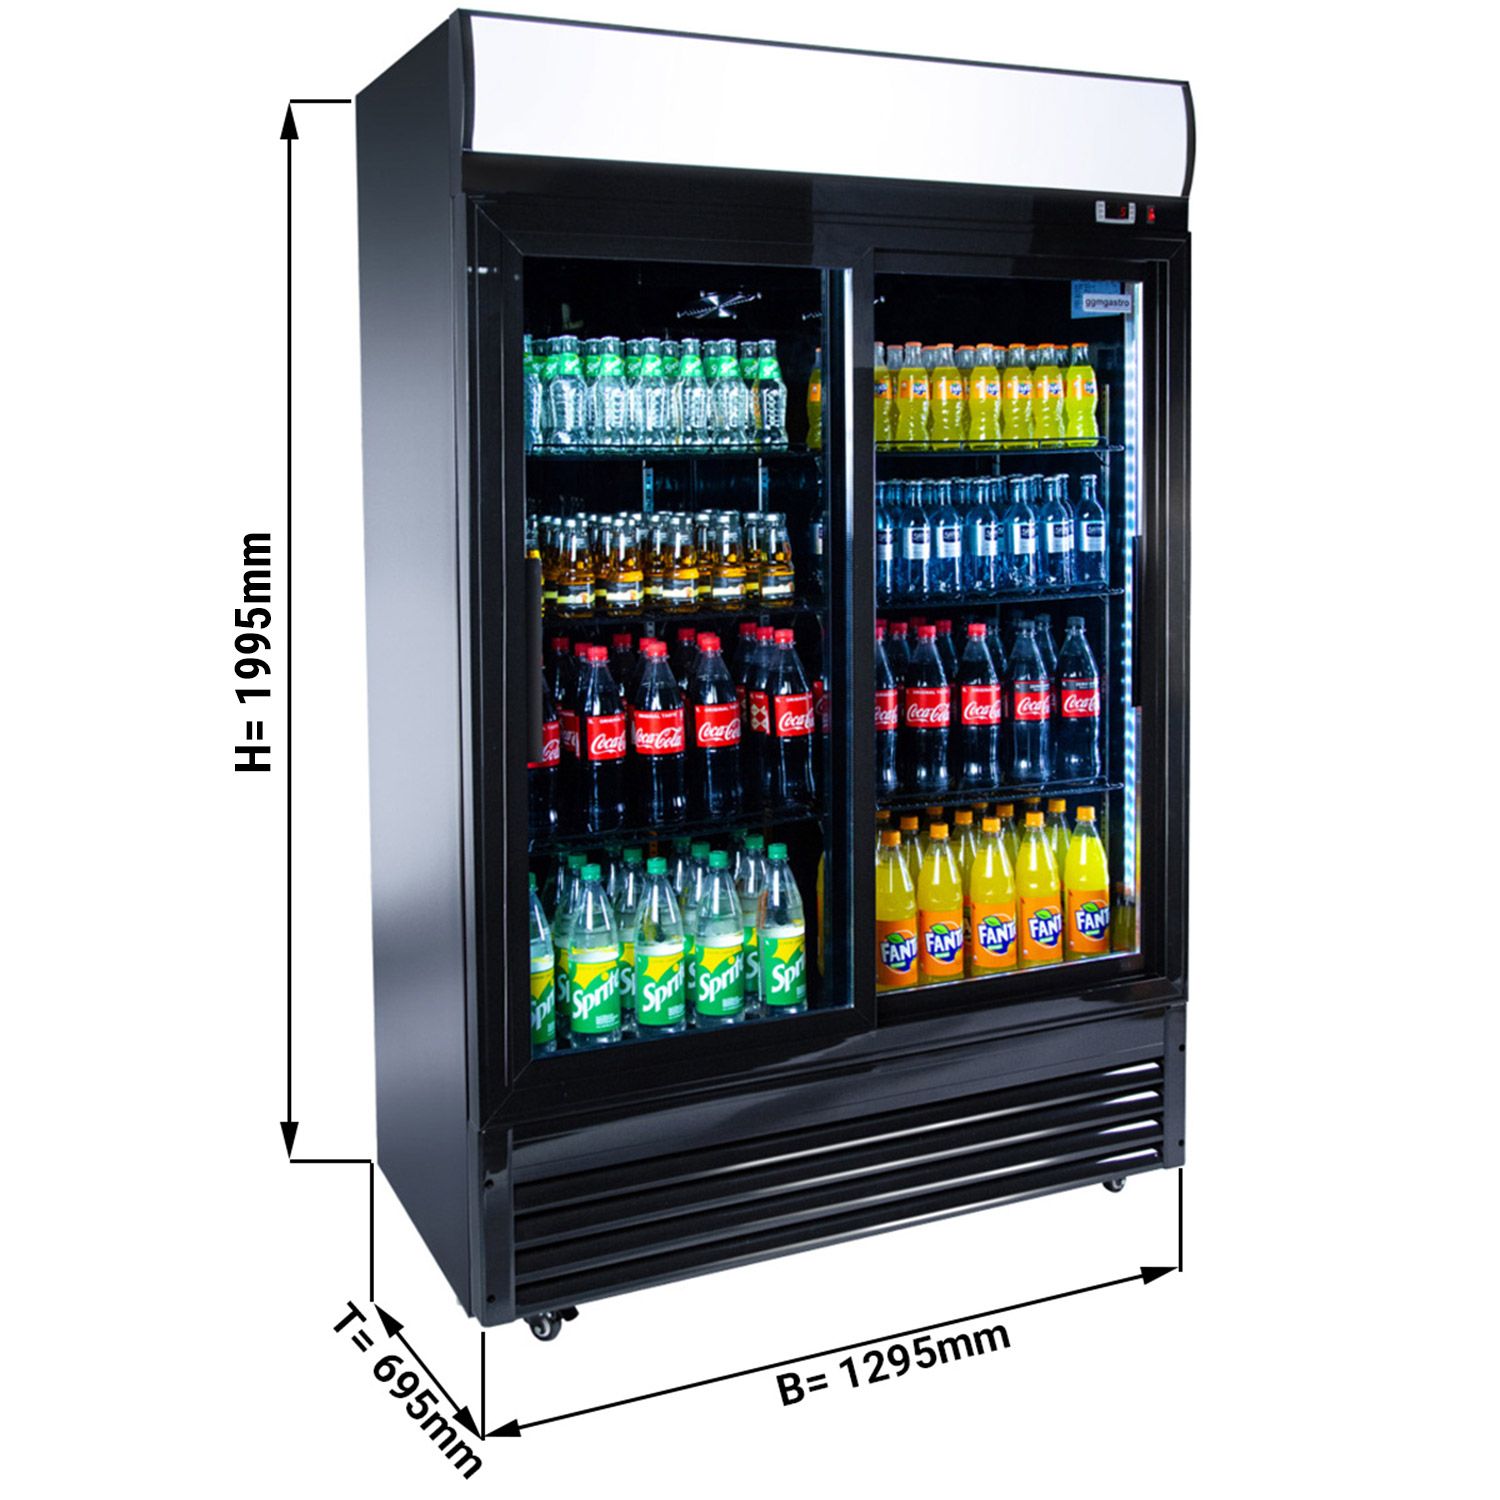 Gastro Getränkekühlschrank - 800 l - 8 Verstellbare Regale - Maxima